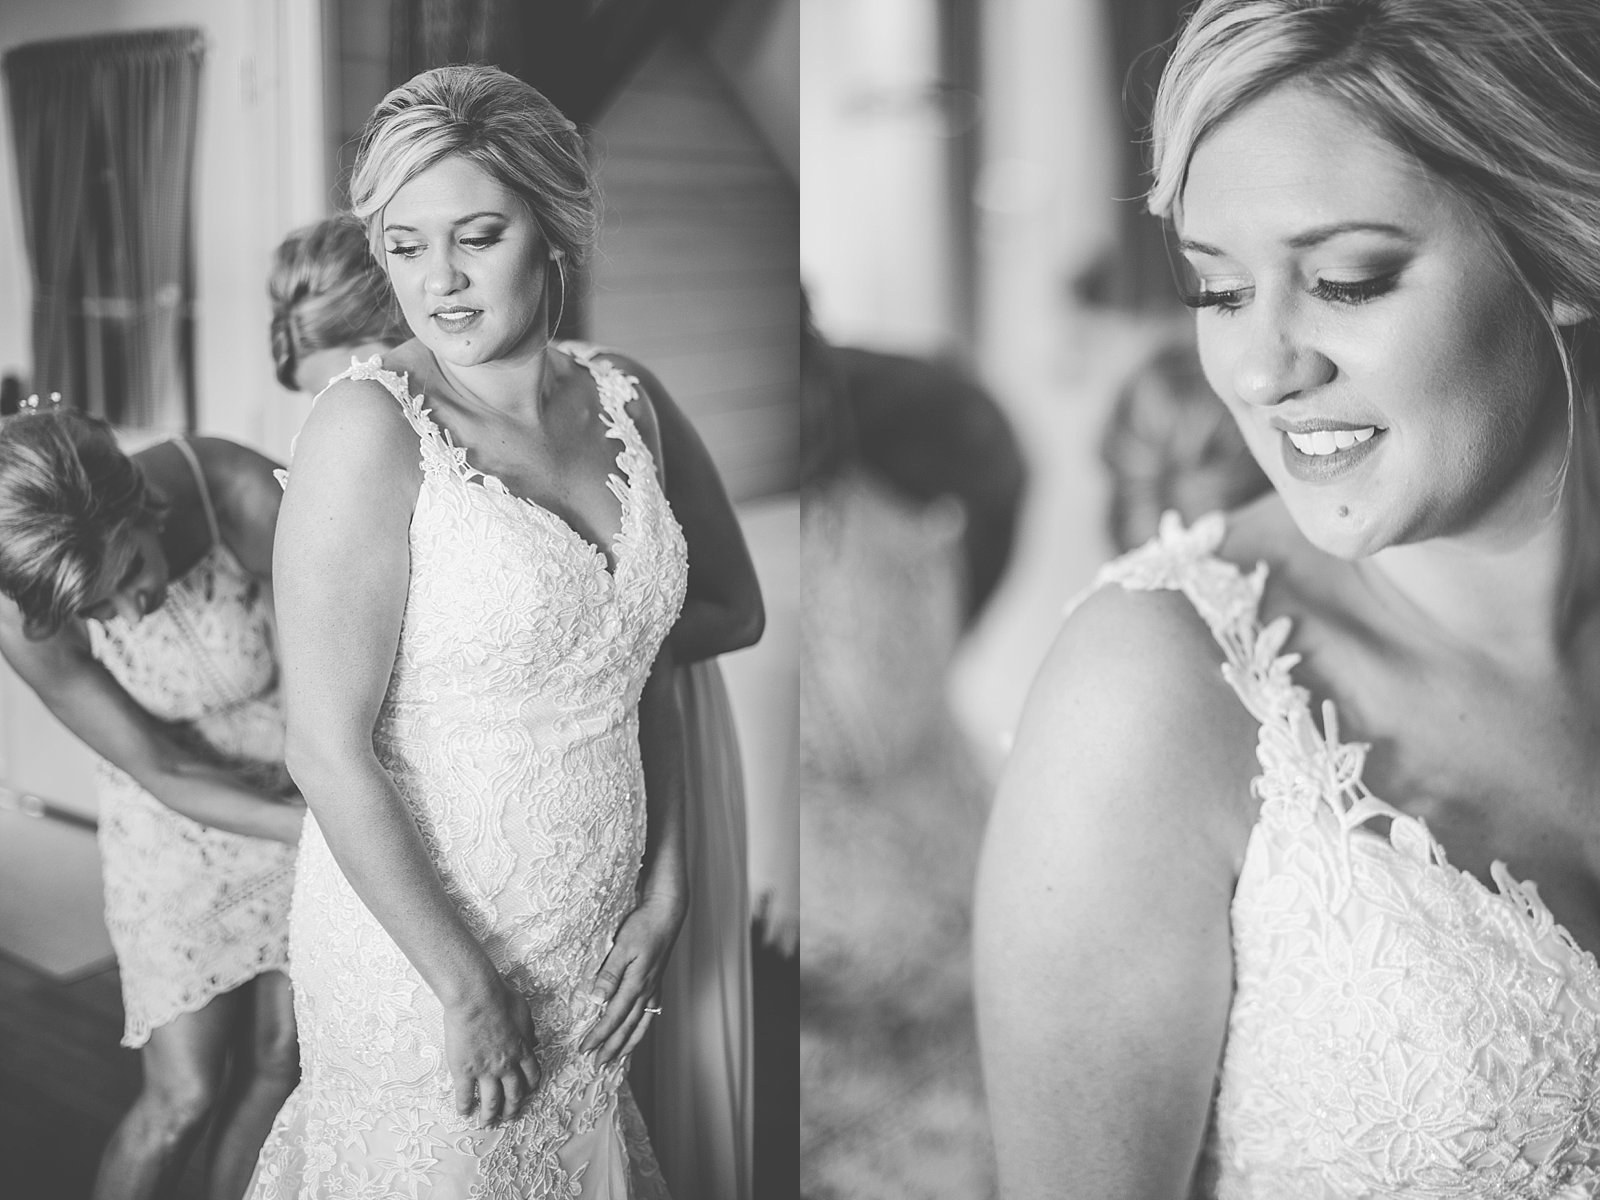 Kyle + Delanie | Petersburg, IL Garden Wedding Photographer | Kate ...